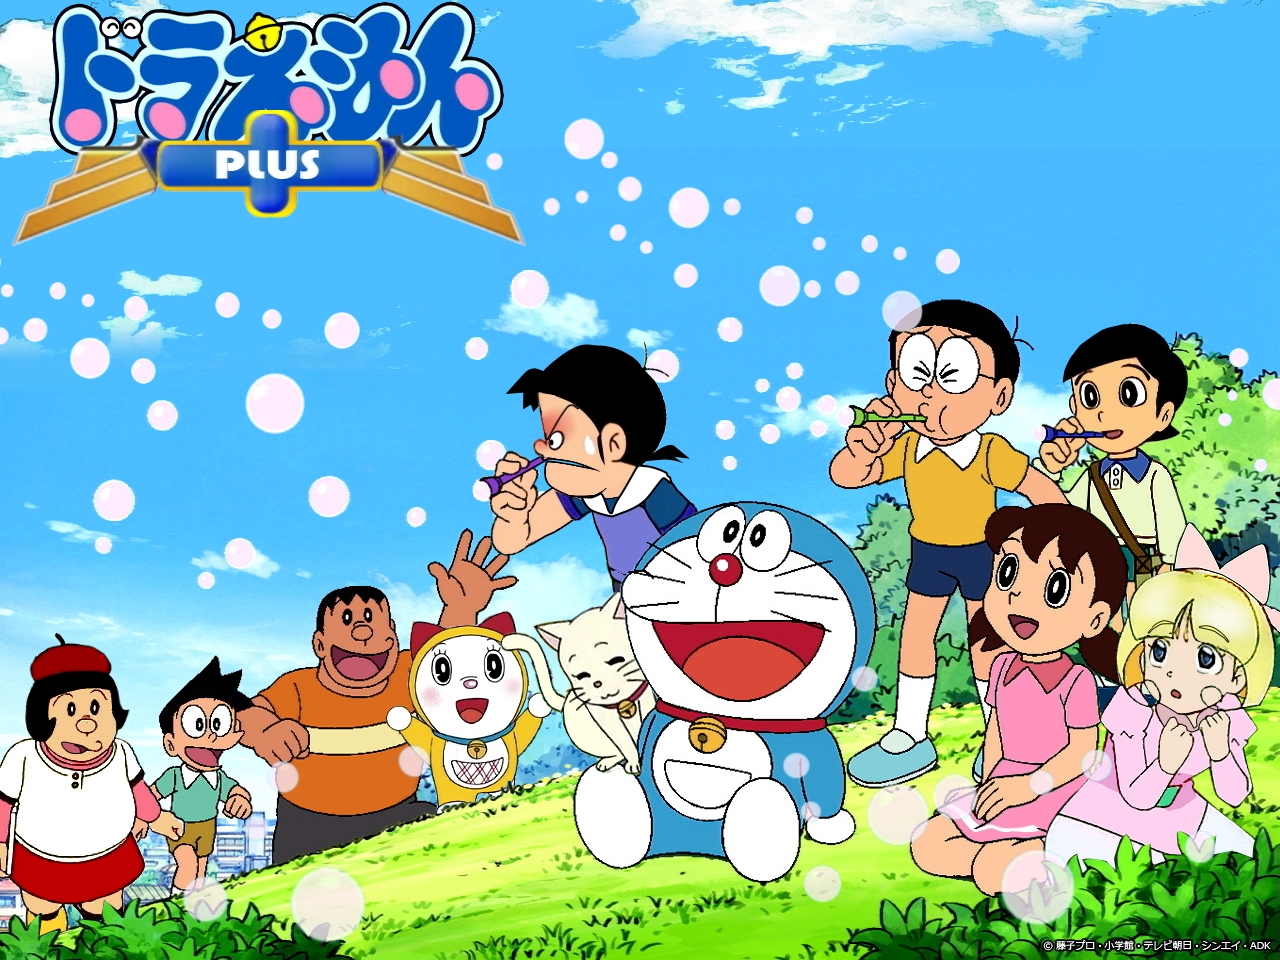 Doraemon pictures: Nếu bạn đang tìm kiếm những tấm hình đẹp về chú mèo máy Doraemon, thì đó chính là tại đây. Bộ sưu tập các hình ảnh Doraemon đủ kiểu dáng, phong cách và thuộc các bộ phim khác nhau sẽ cho bạn trải nghiệm đầy thú vị.